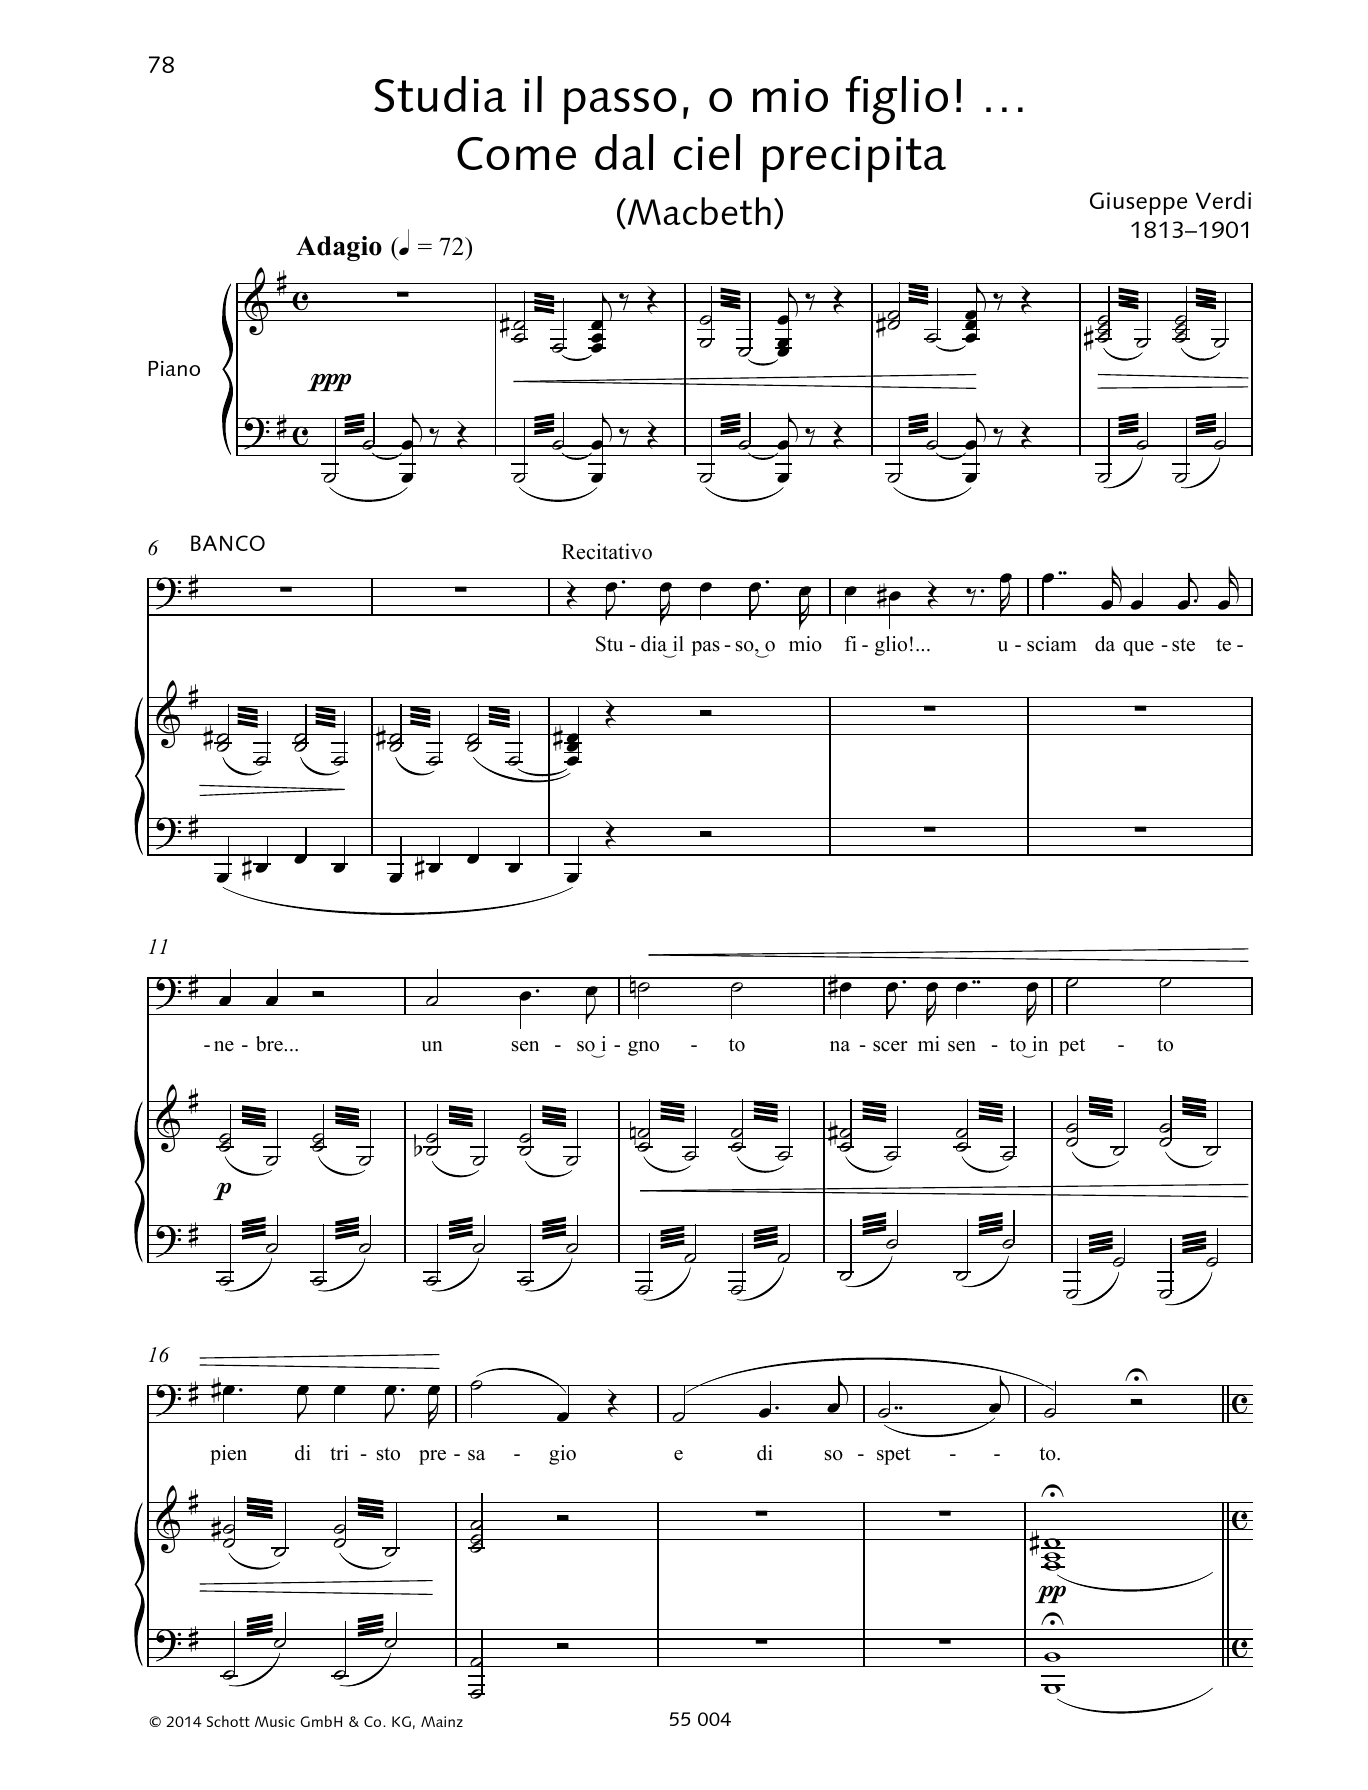 Giuseppe Verdi Studia il passo, o mio figlio!... Come dal ciel precipita Sheet Music Notes & Chords for Piano & Vocal - Download or Print PDF